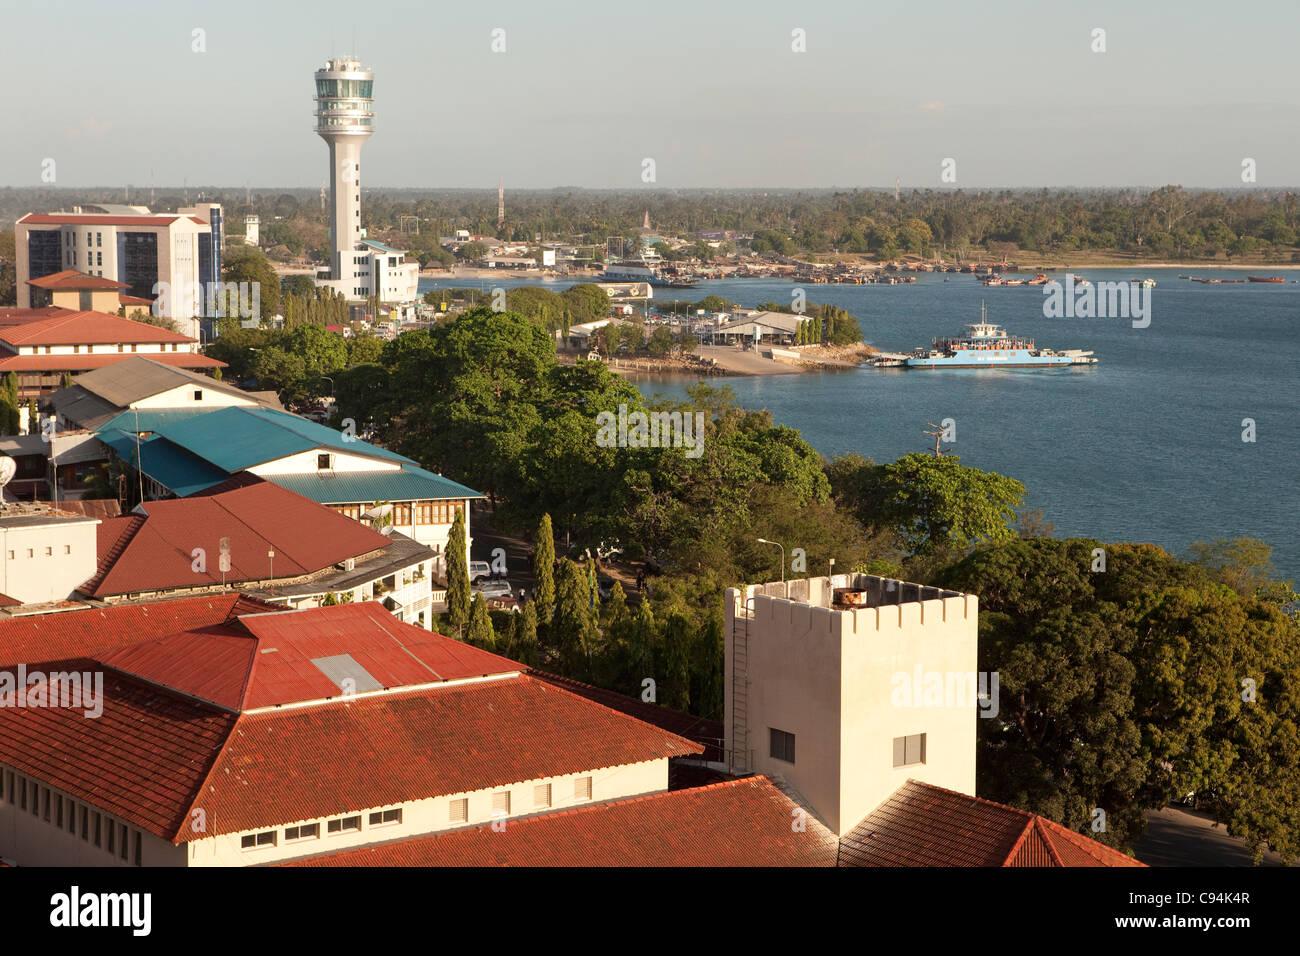 El puerto de Dar es Salaam, Tanzania, África Oriental Fotografía de stock -  Alamy